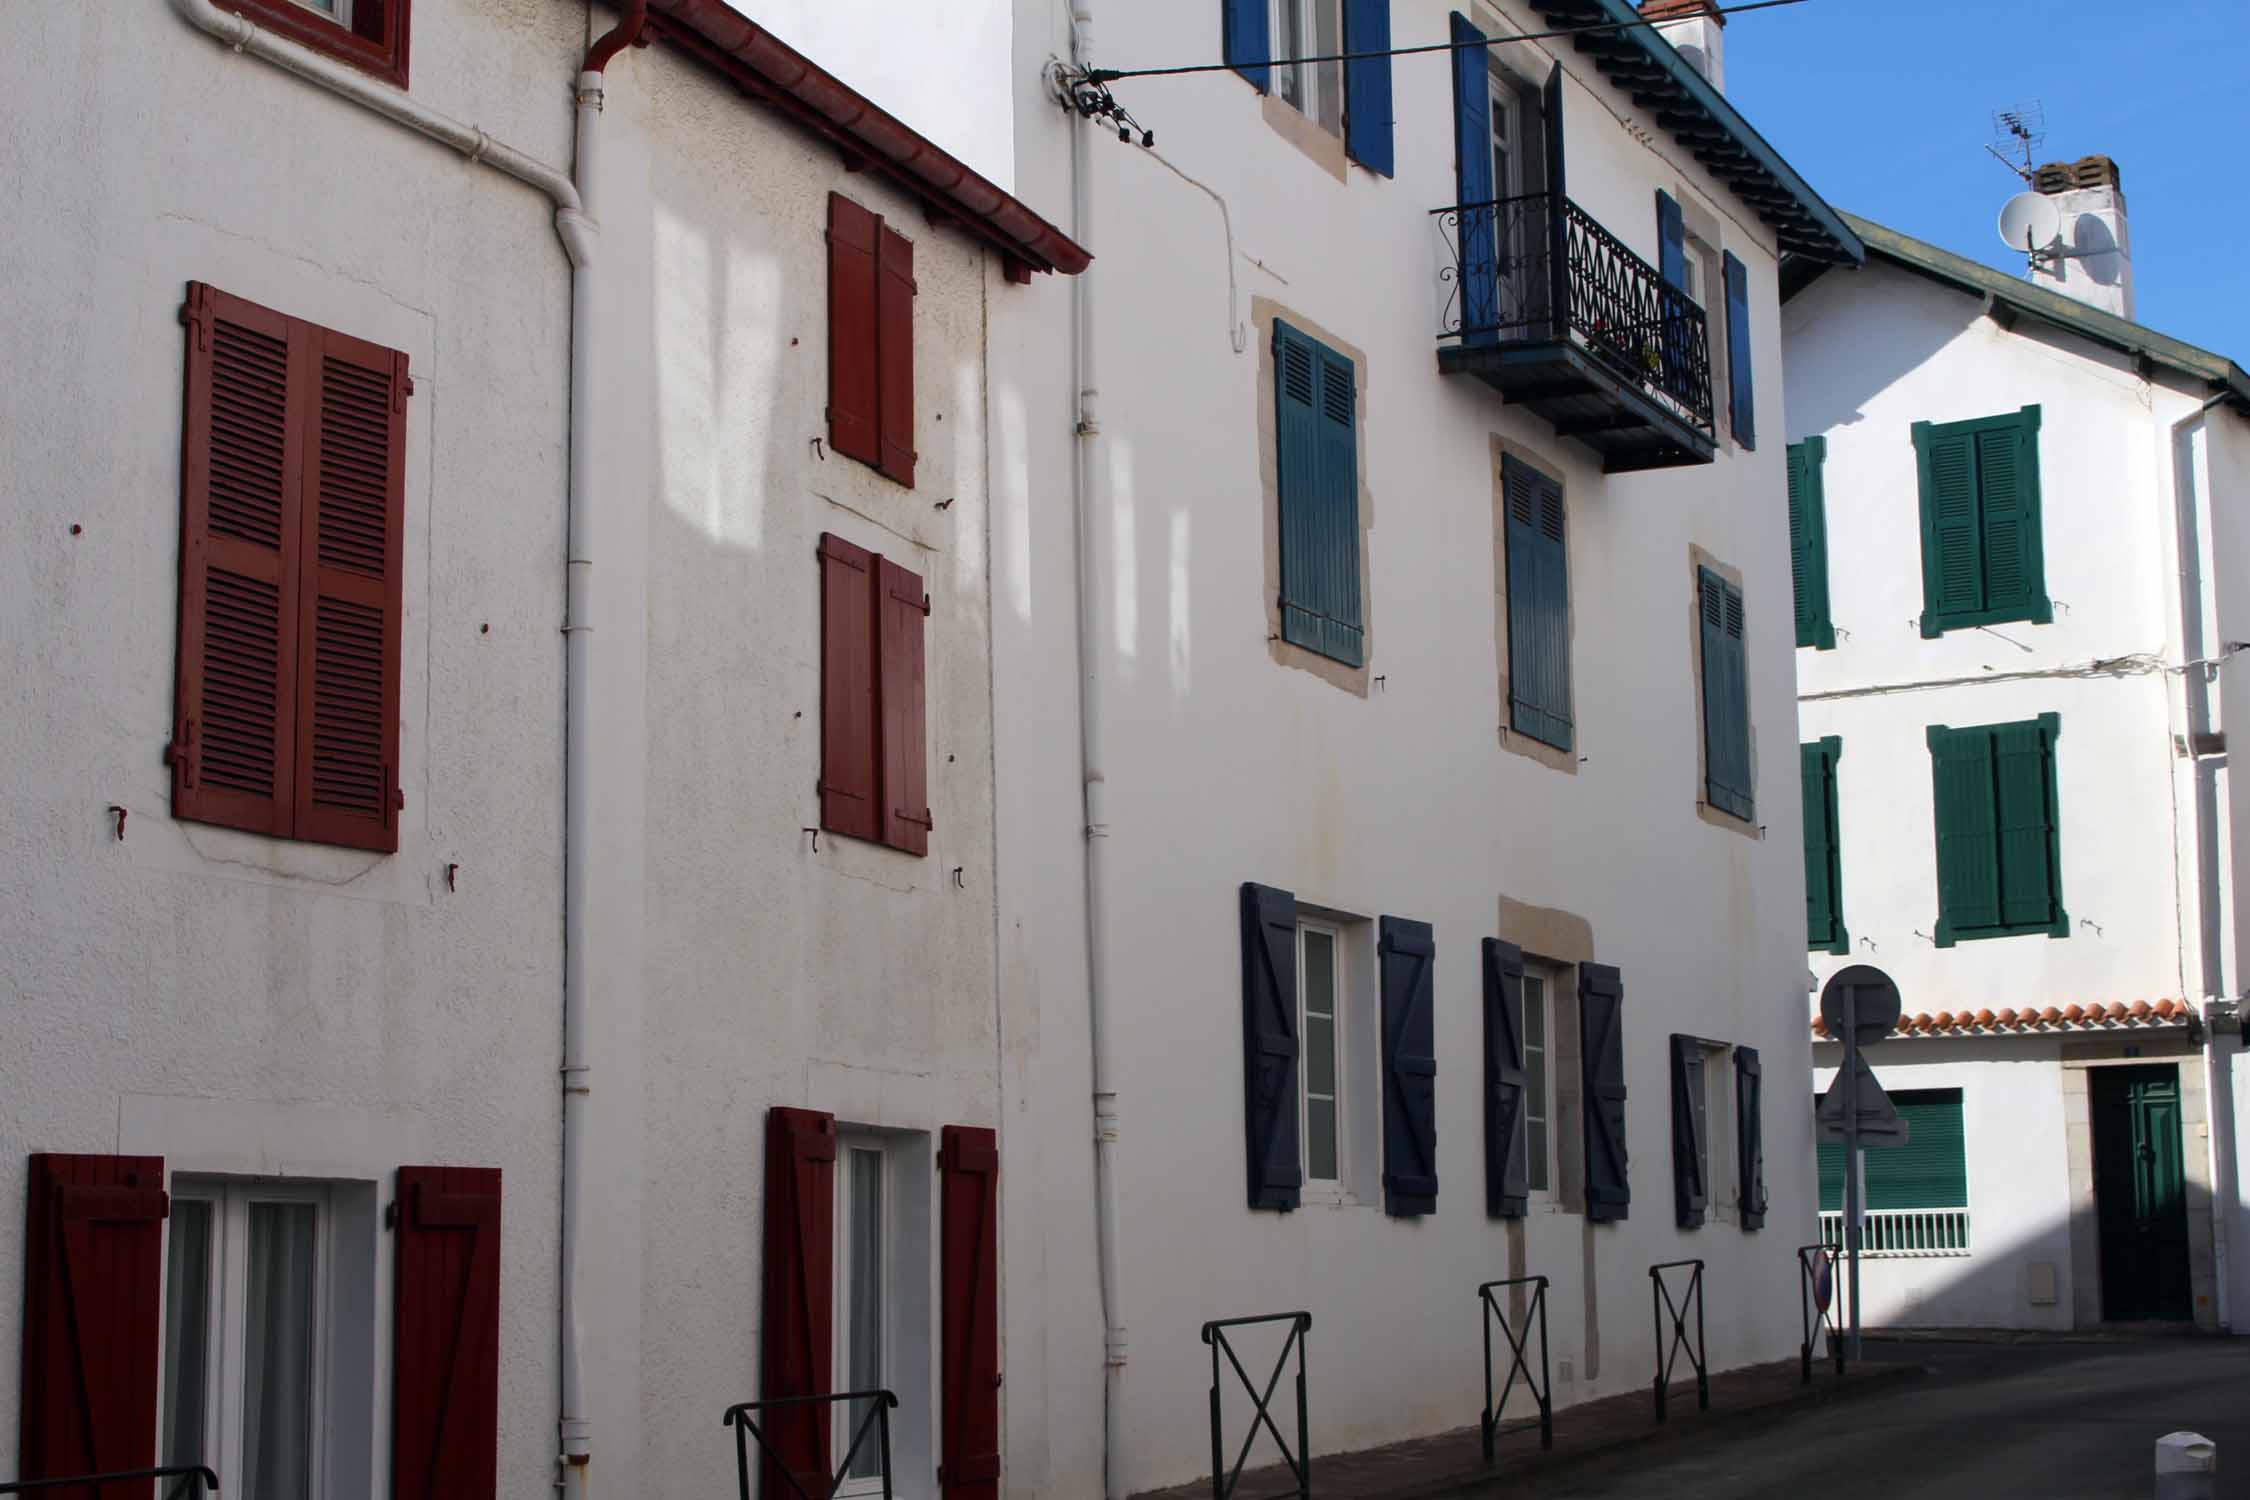 Saint-Jean-de-Luz, fenêtres colorées